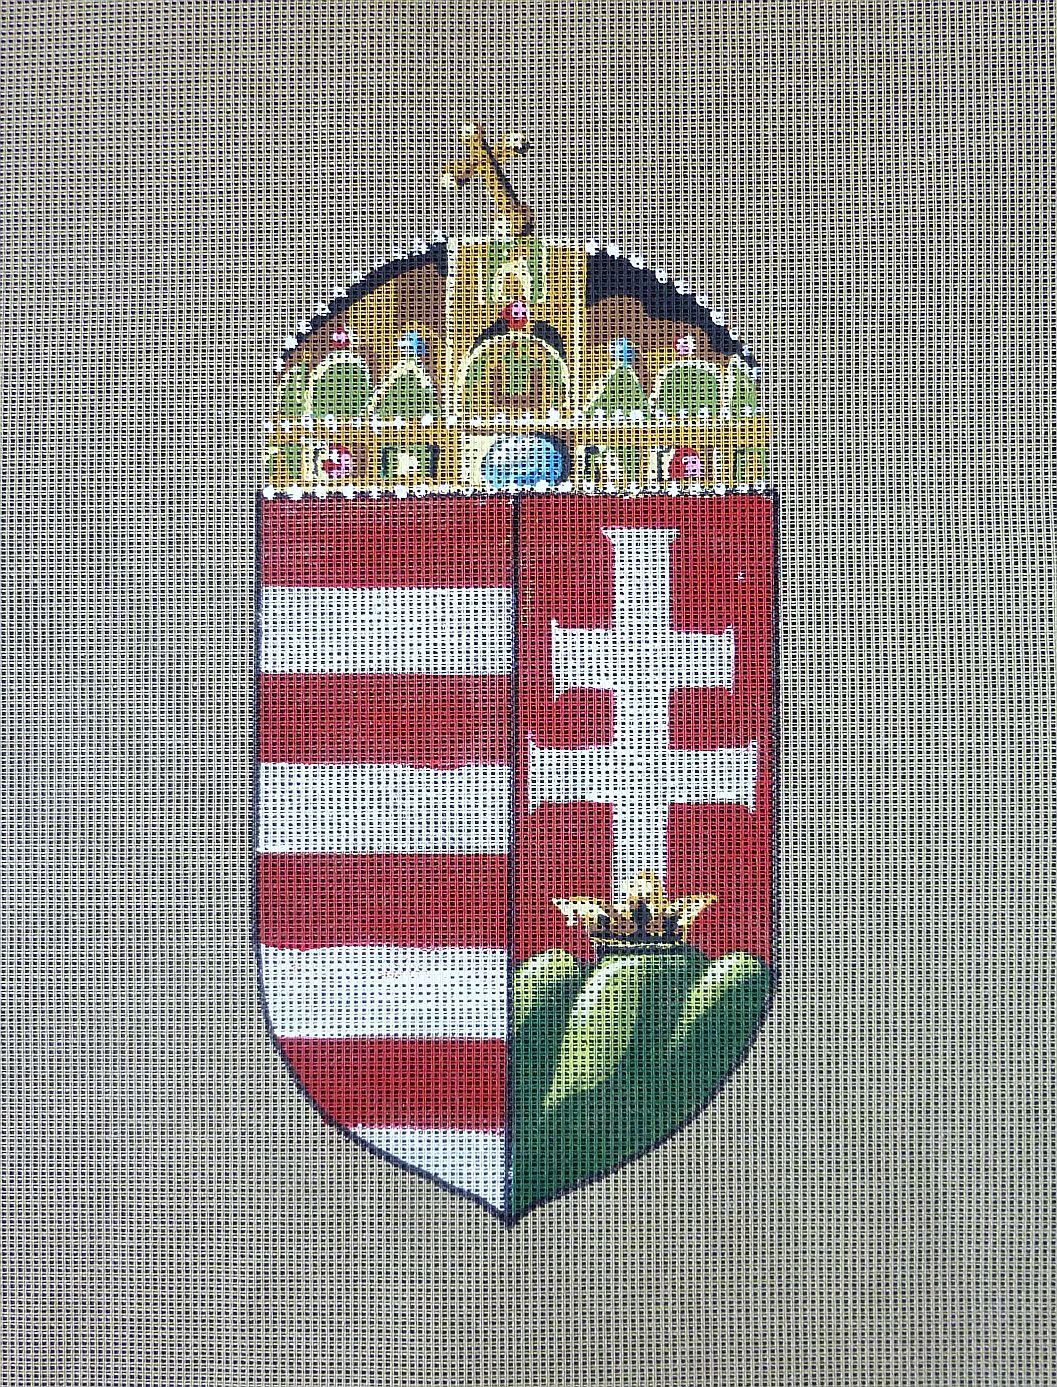 Magyar koronás címer